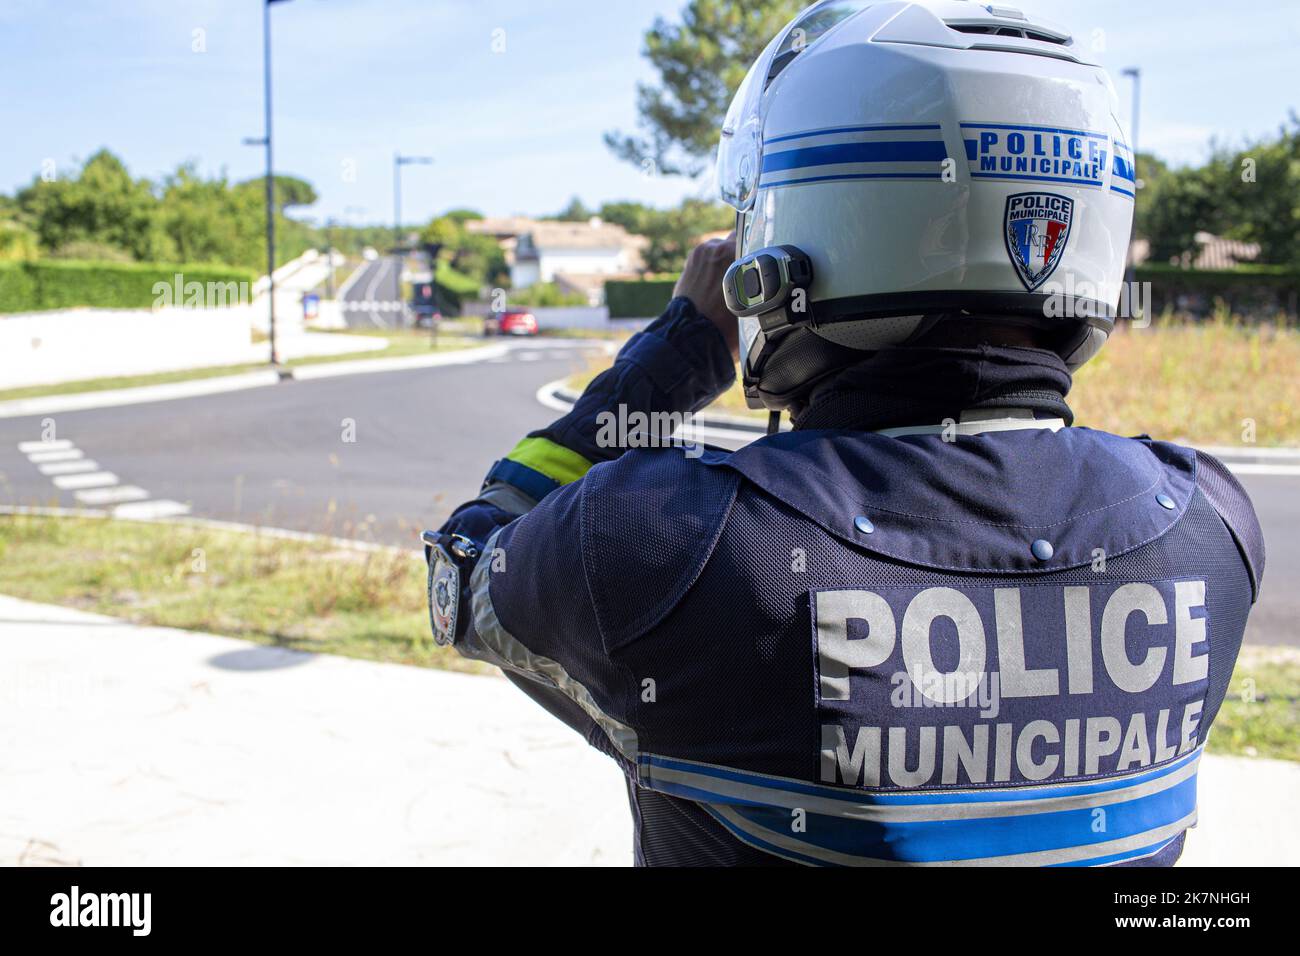 Un policier municipal de l'unité motrice, vu de l'arrière, effectue une mission de surveillance avec ses jumelles au bord de la route dans un ar résidentiel Banque D'Images